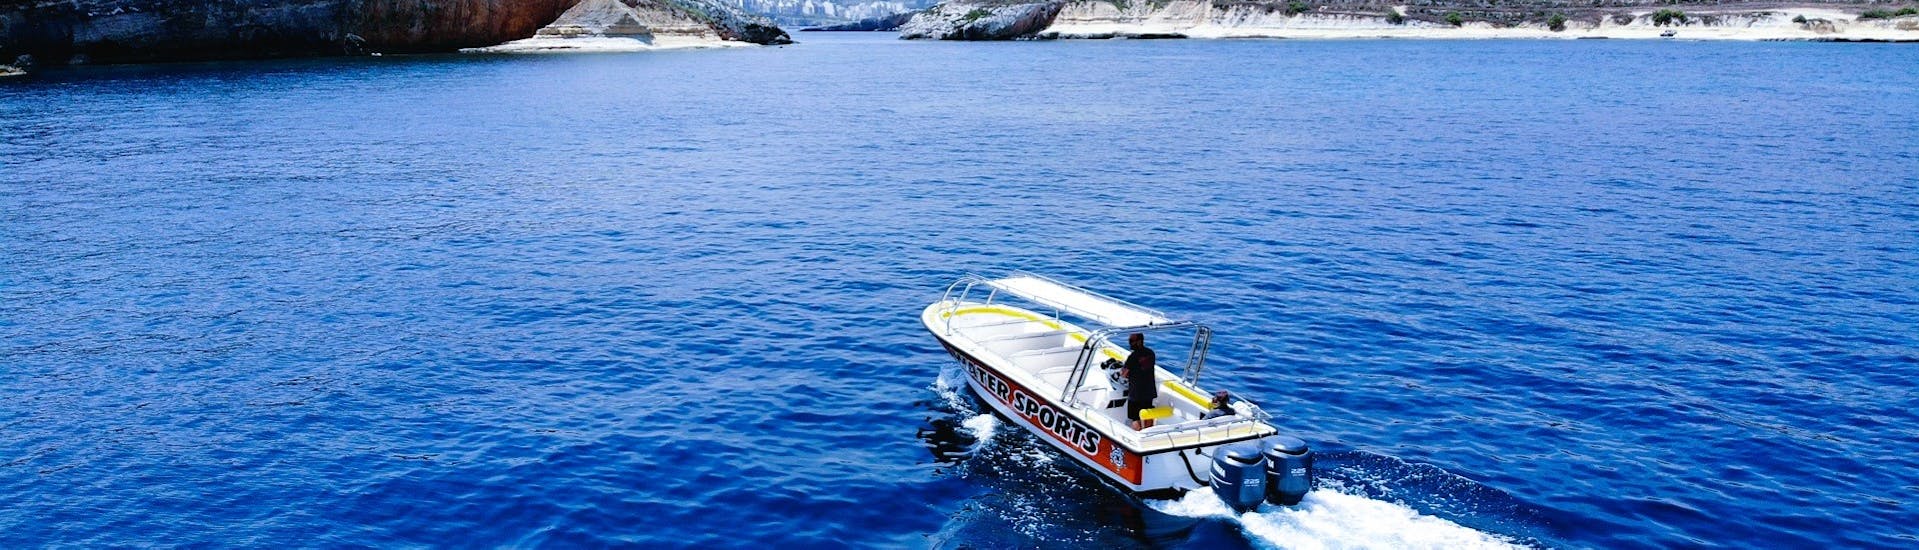 Balade en bateau - Qawra avec Visites touristiques.